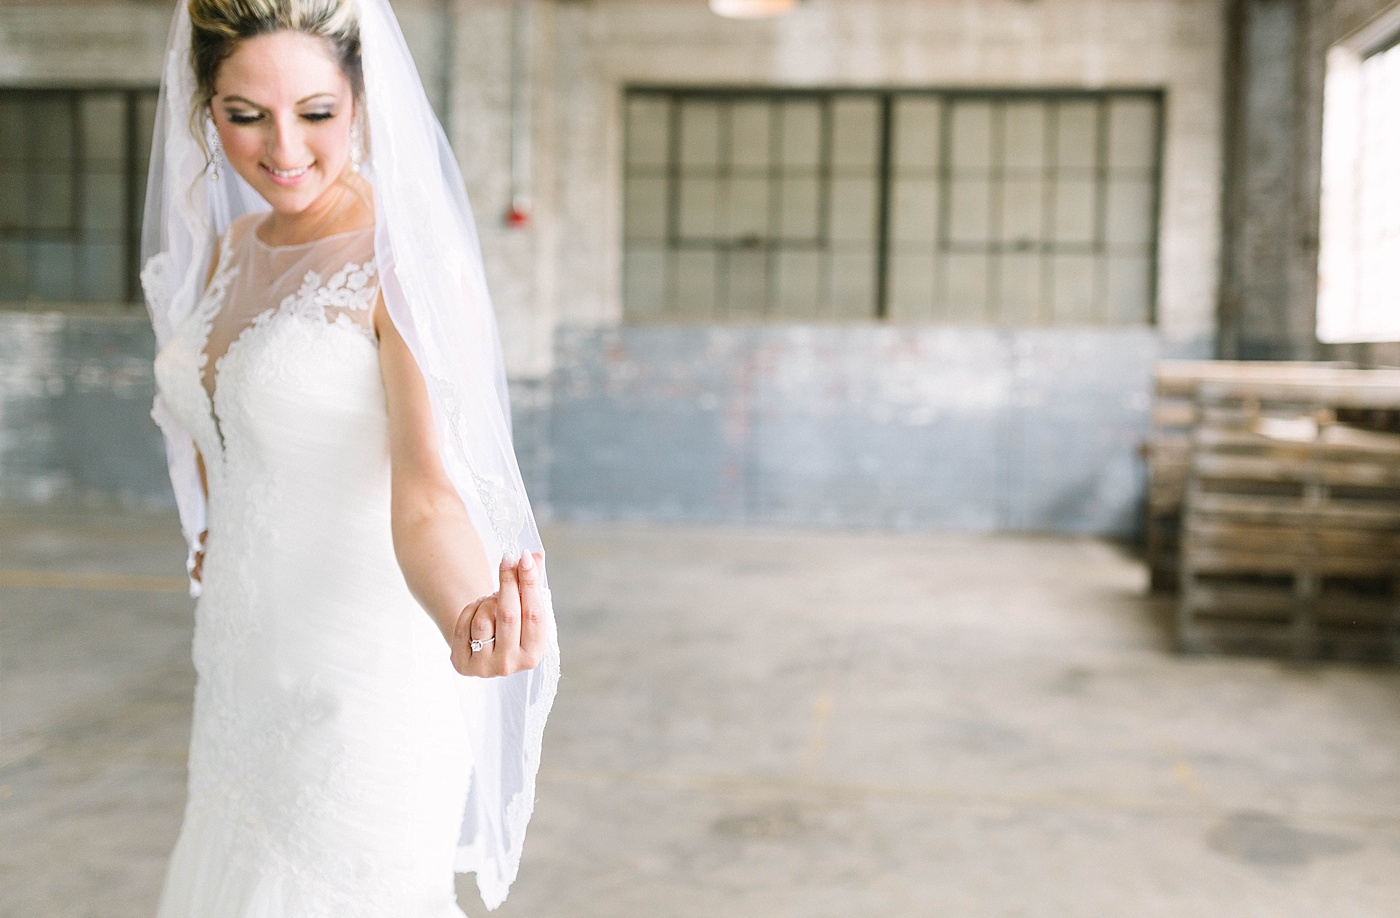 Downtown Jacksonville Florida Glass Factory wedding bride portrait